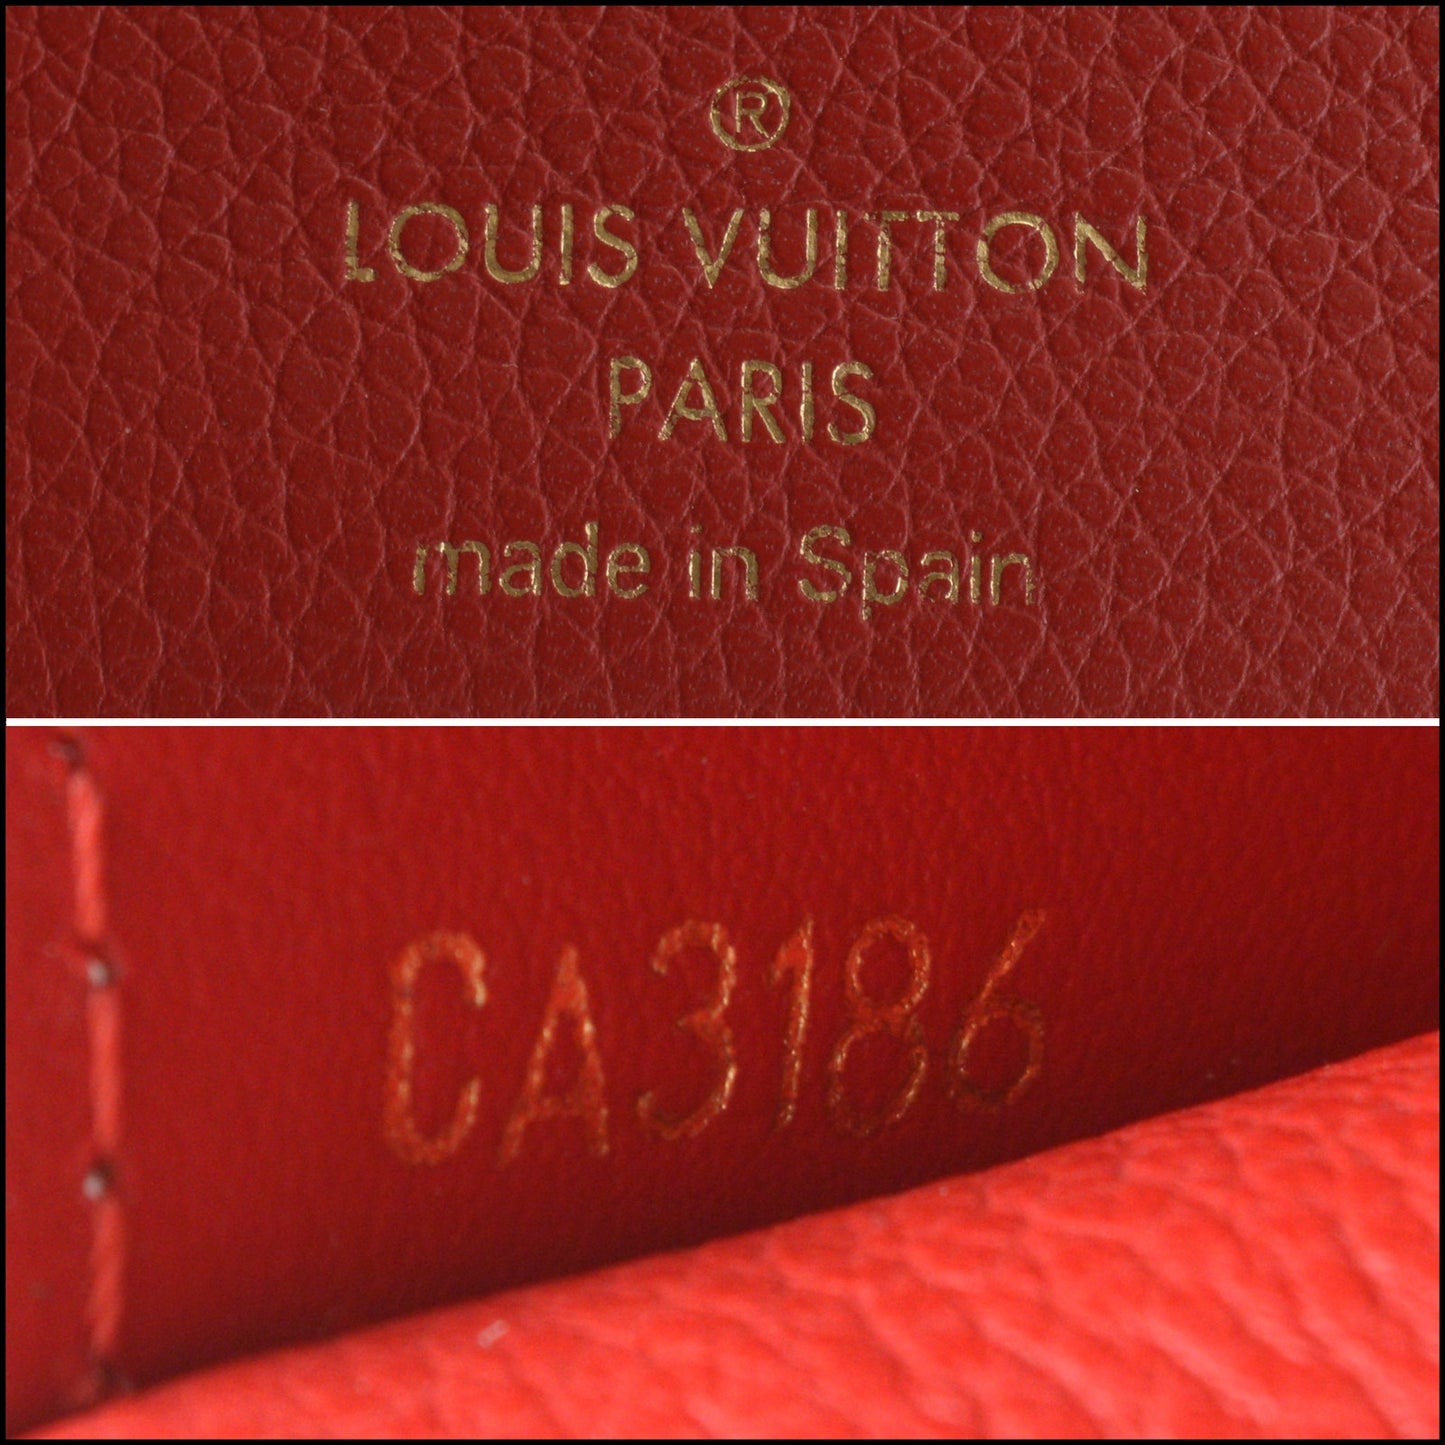 RDC13972 Authentic LOUIS VUITTON Red Leather Cerise Compact Pallas Wallet